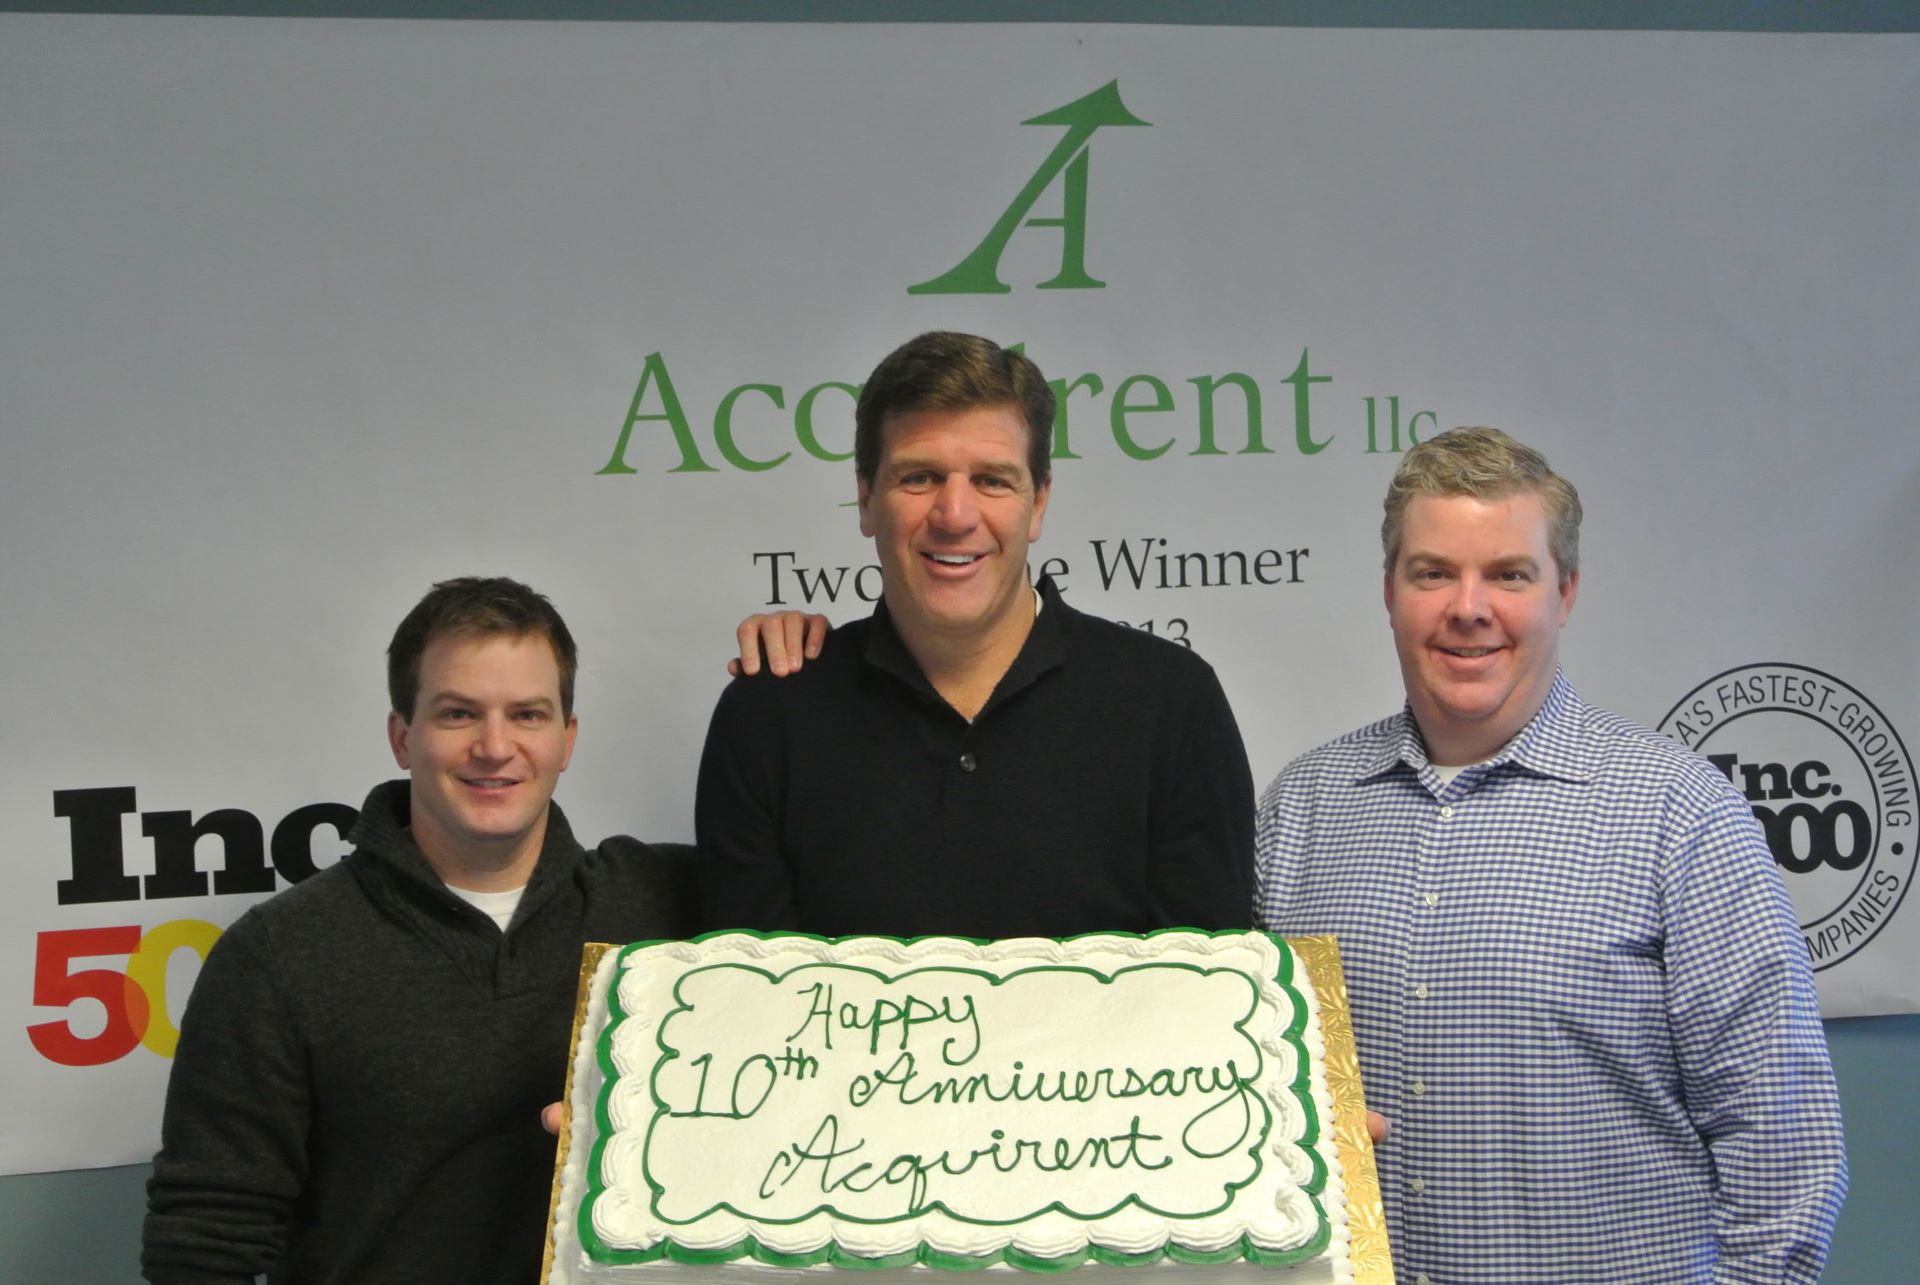 Geoff Winthrop, Joe Flanagan, Jeff Purtell Celebrate Acquirent 10 Year Anniversary